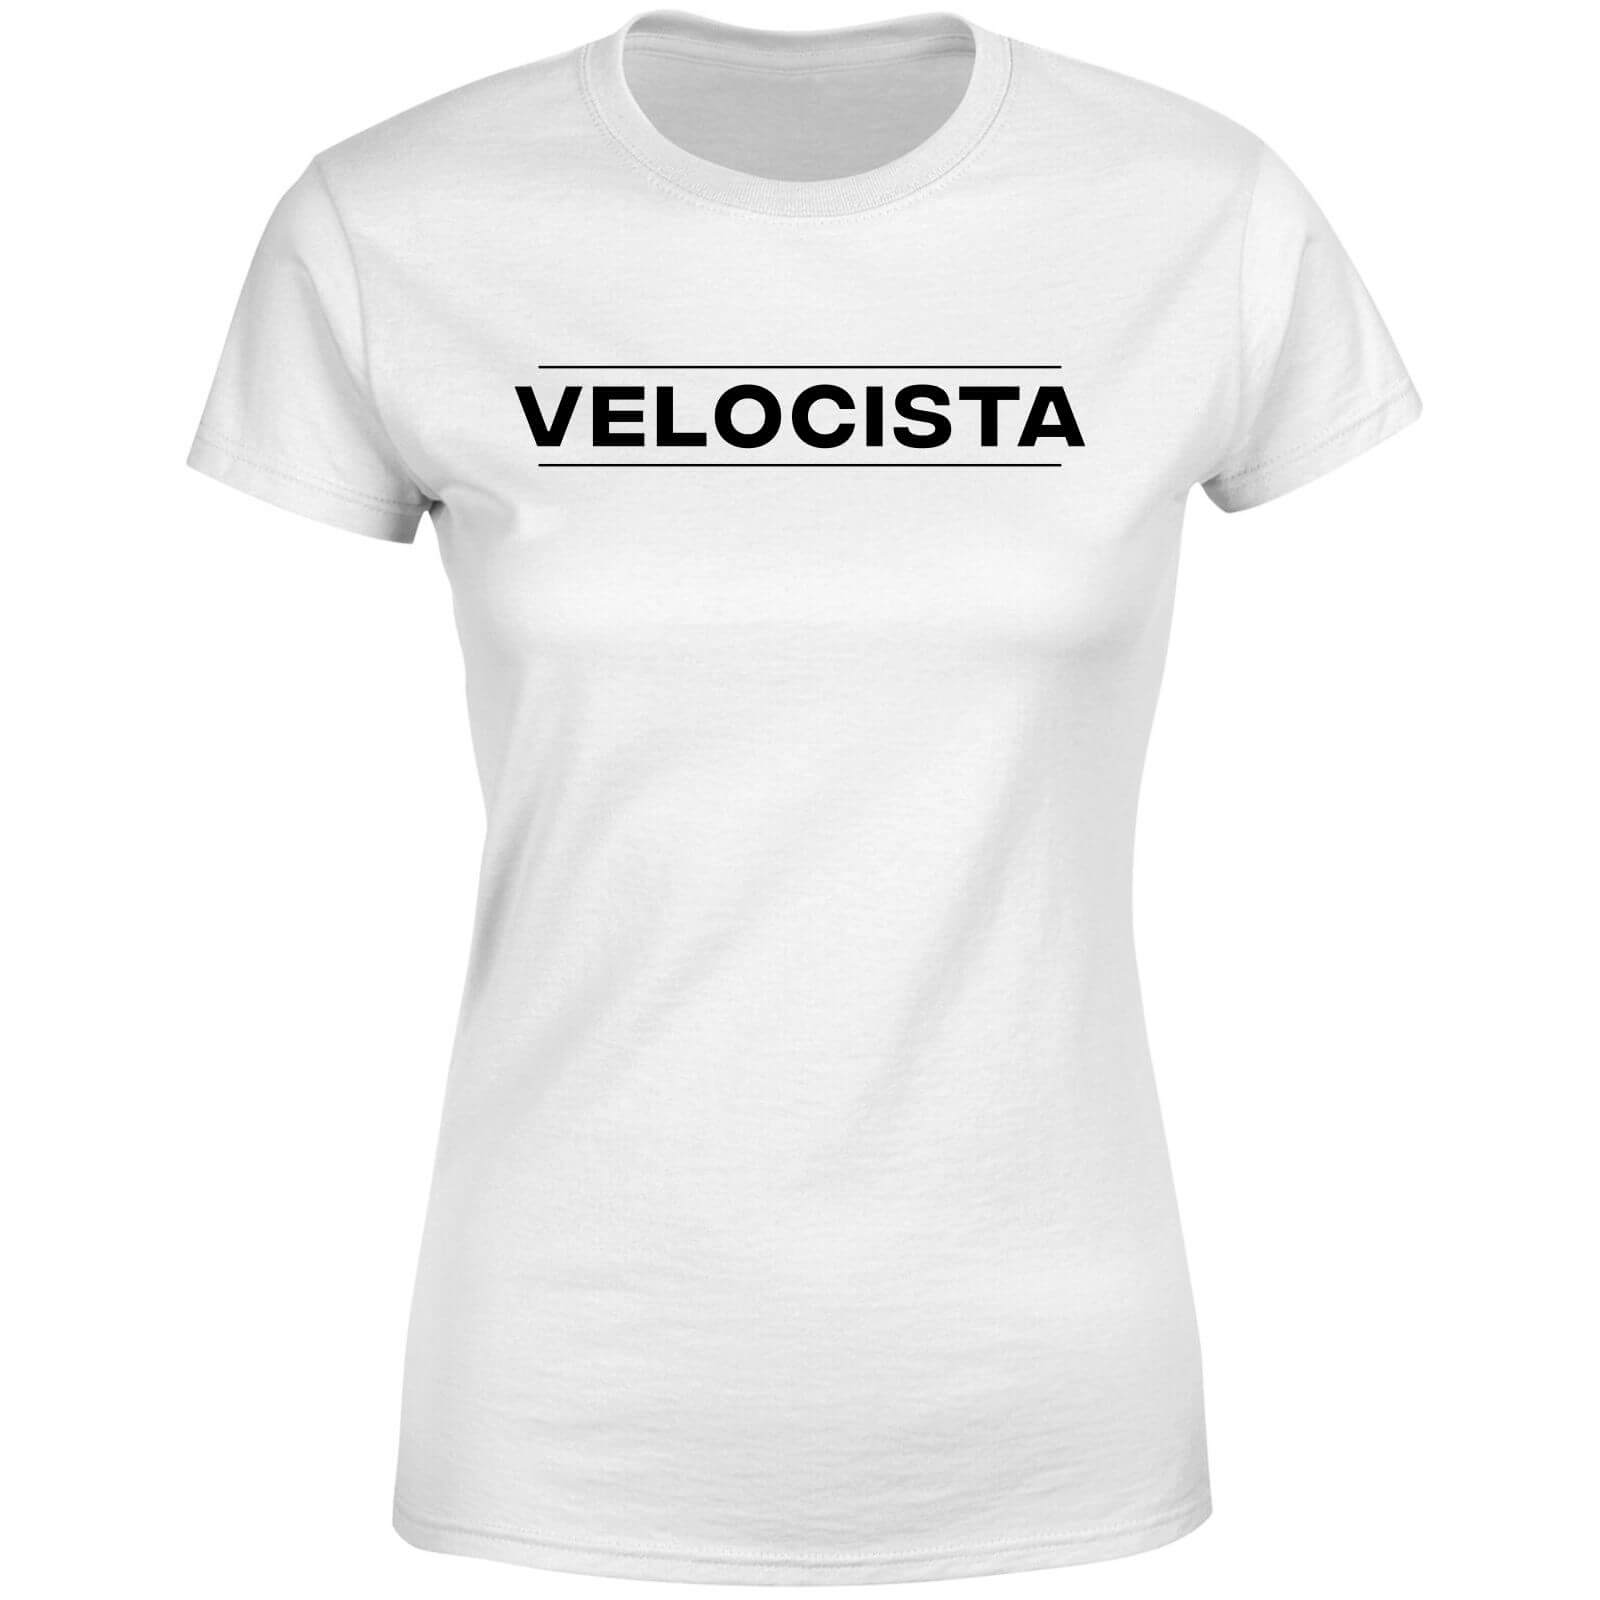 Velocista Women's T-Shirt - White - XS - White